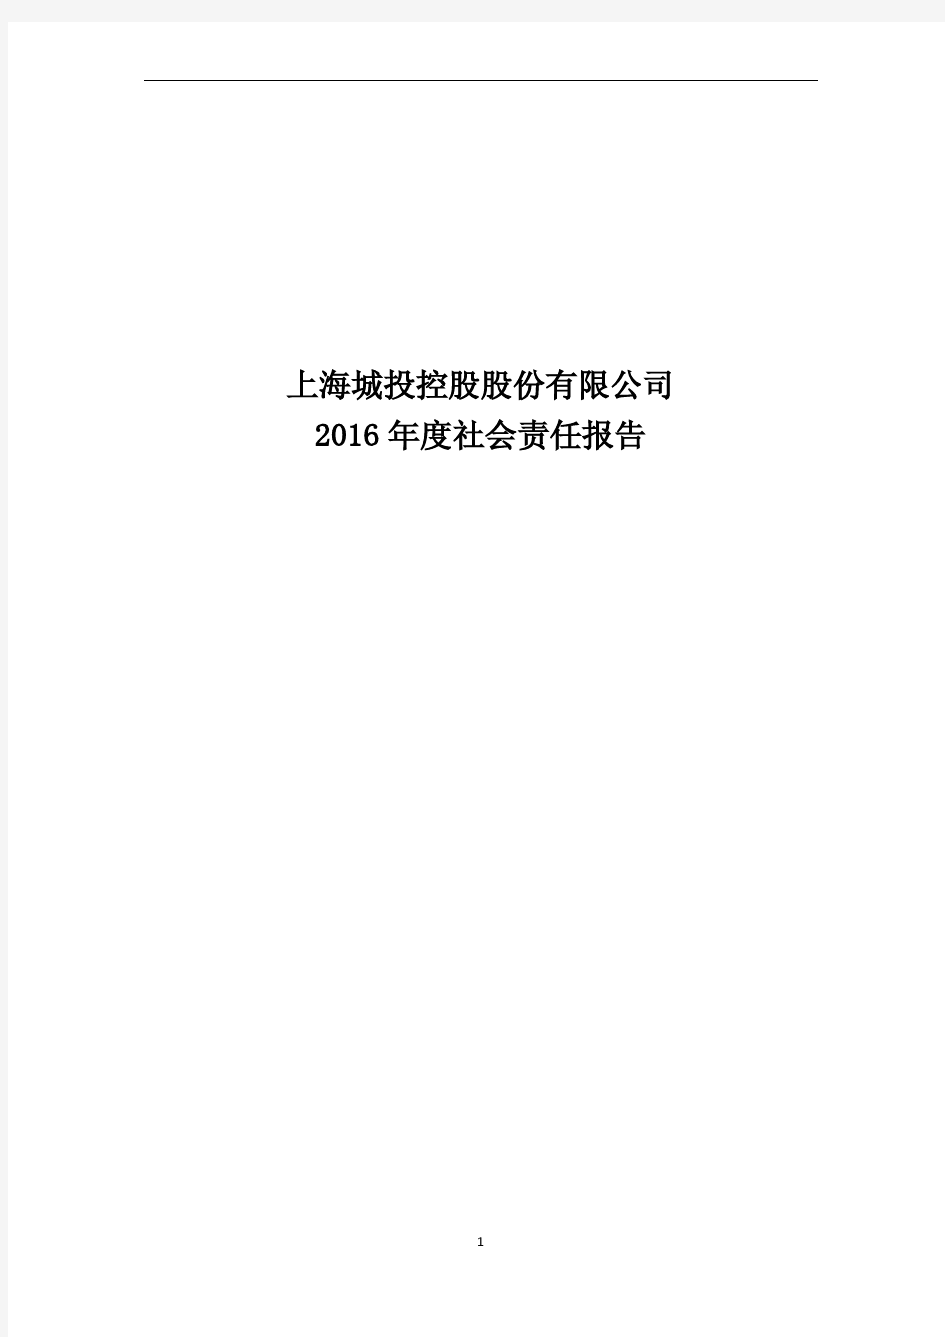 上海城投控股股份有限公司